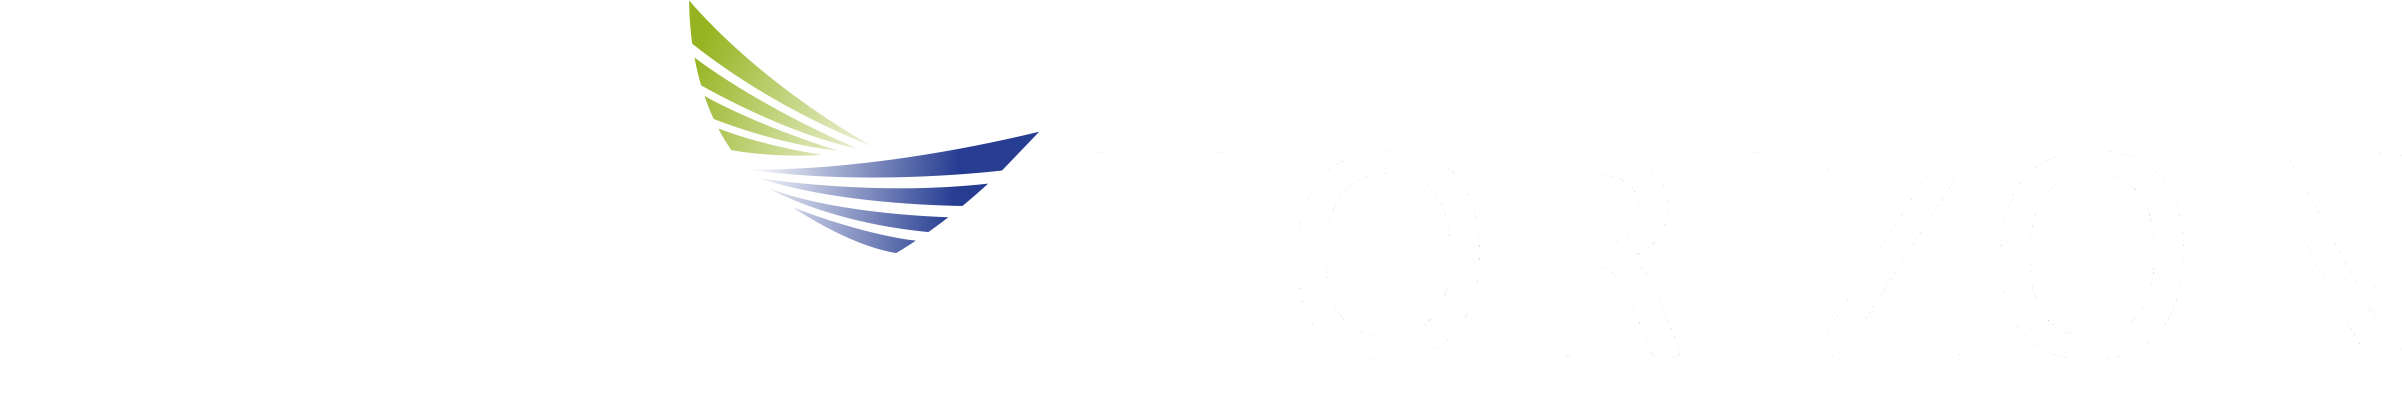 hytera horizon logos transparent white